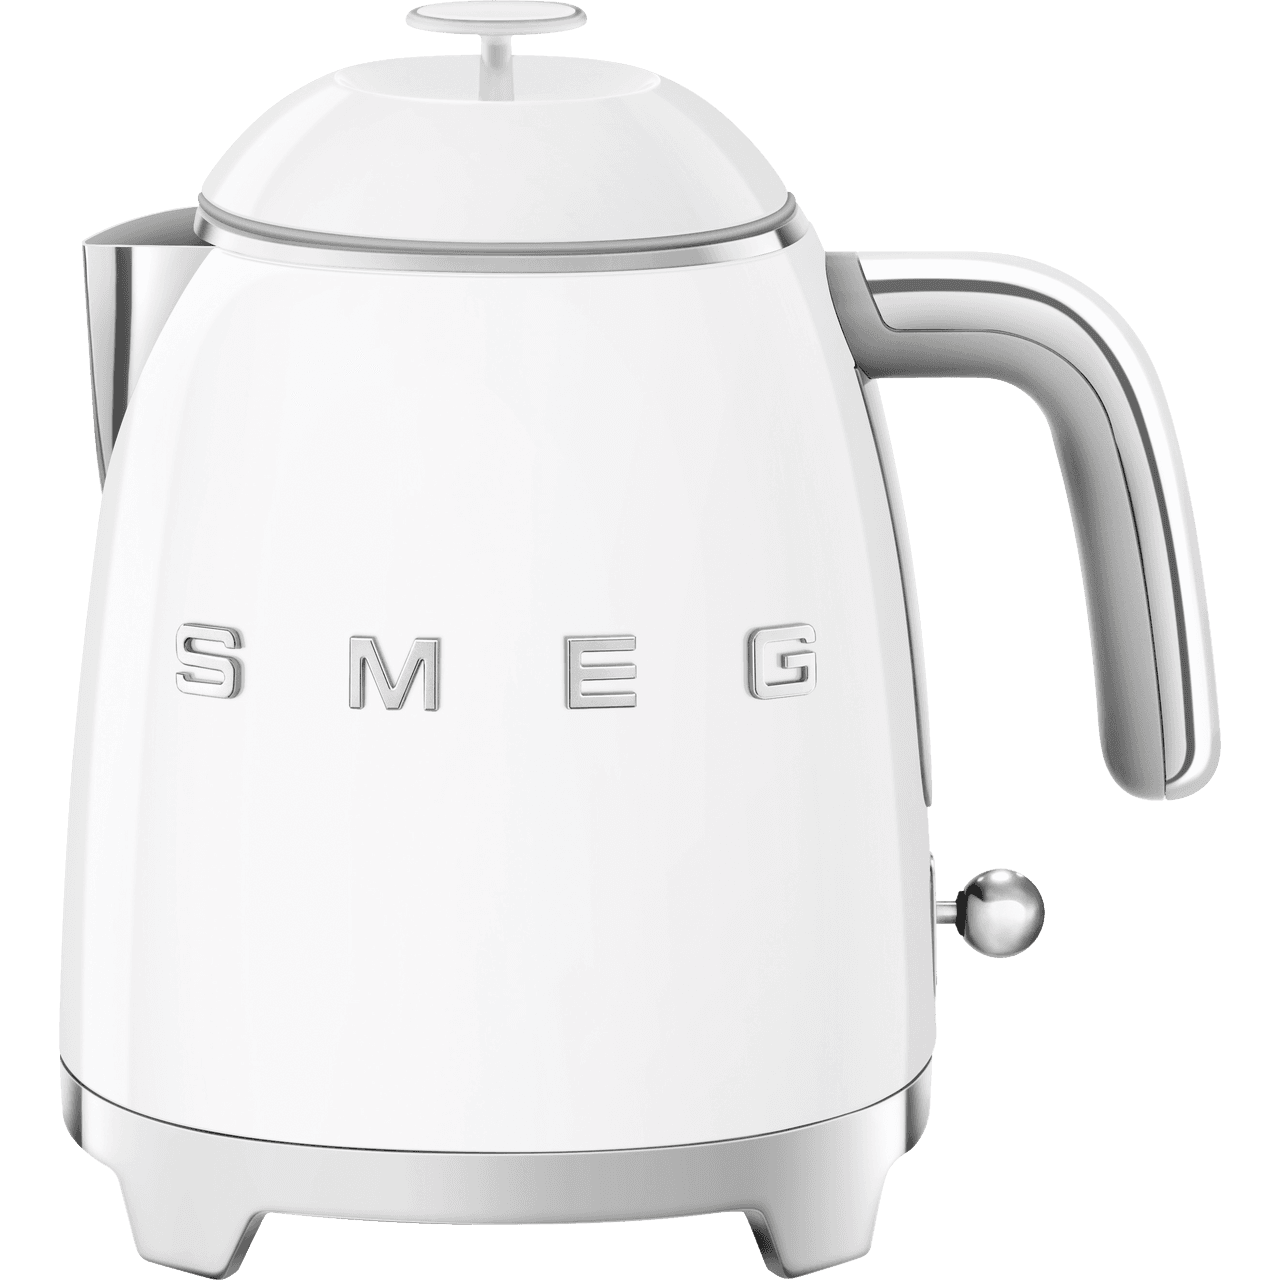 SMEG 50's Retro Style 3 Cup Mini Kettle & Reviews